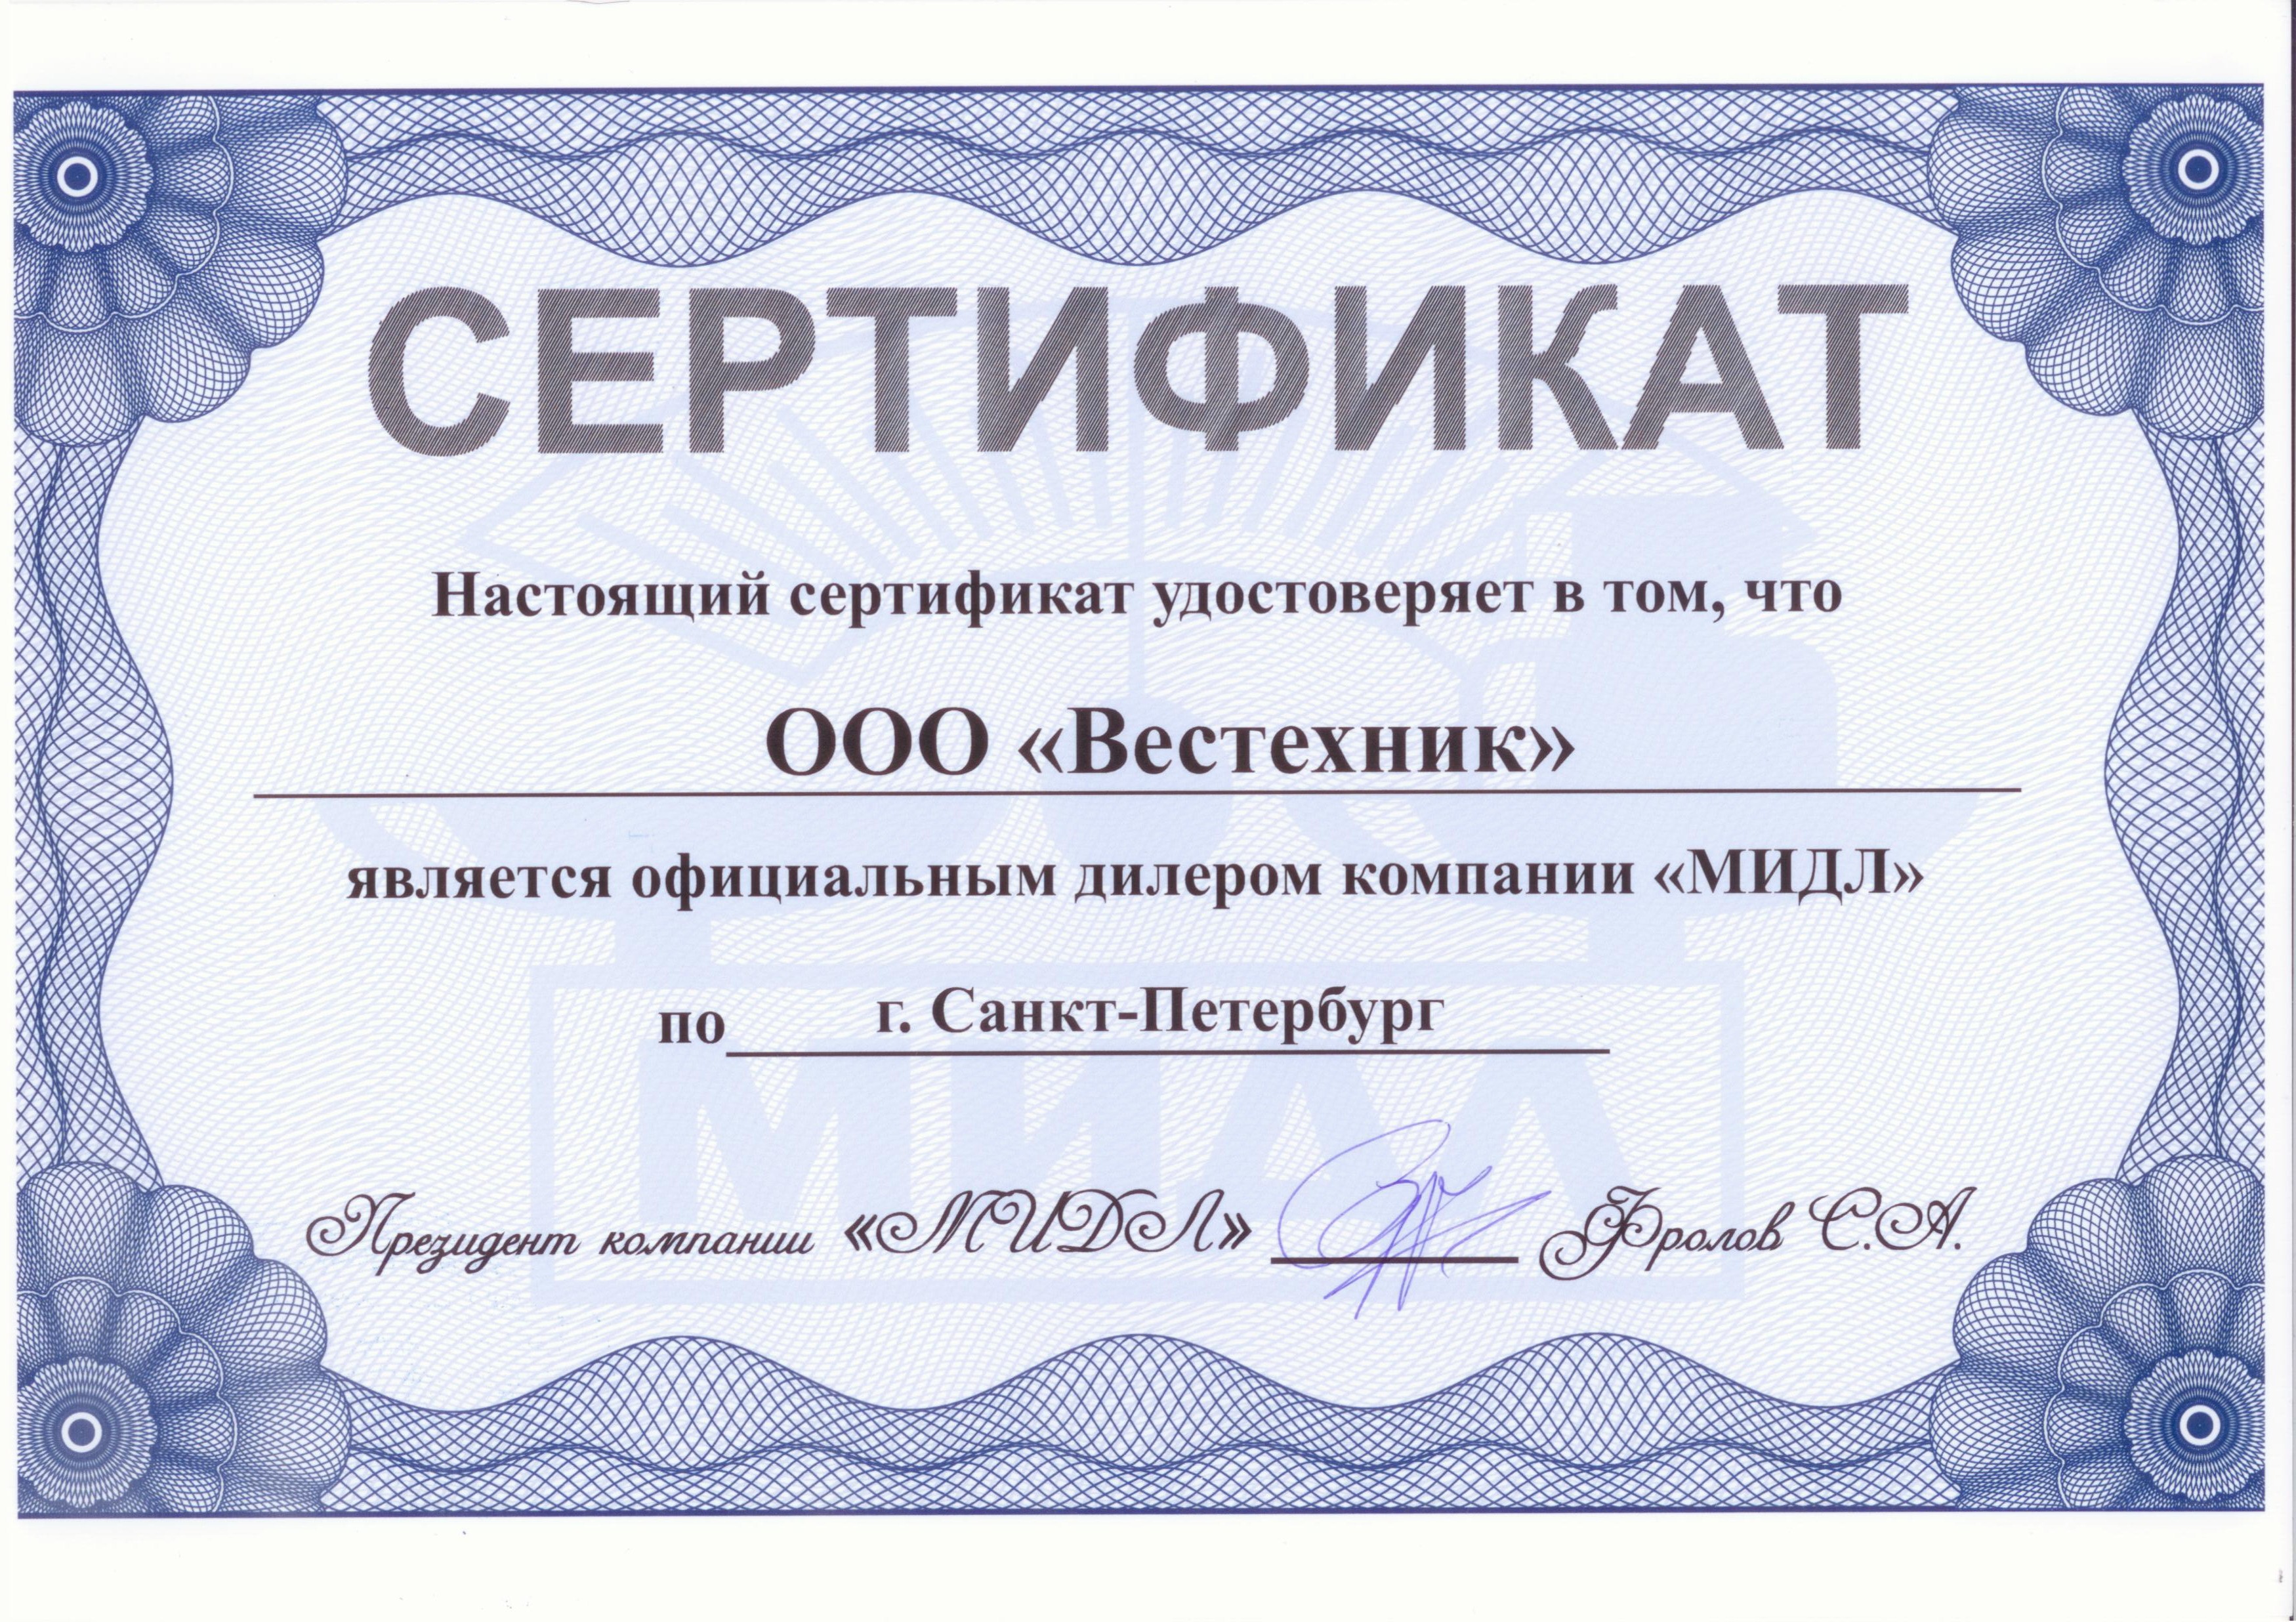 Сертификат Мидл